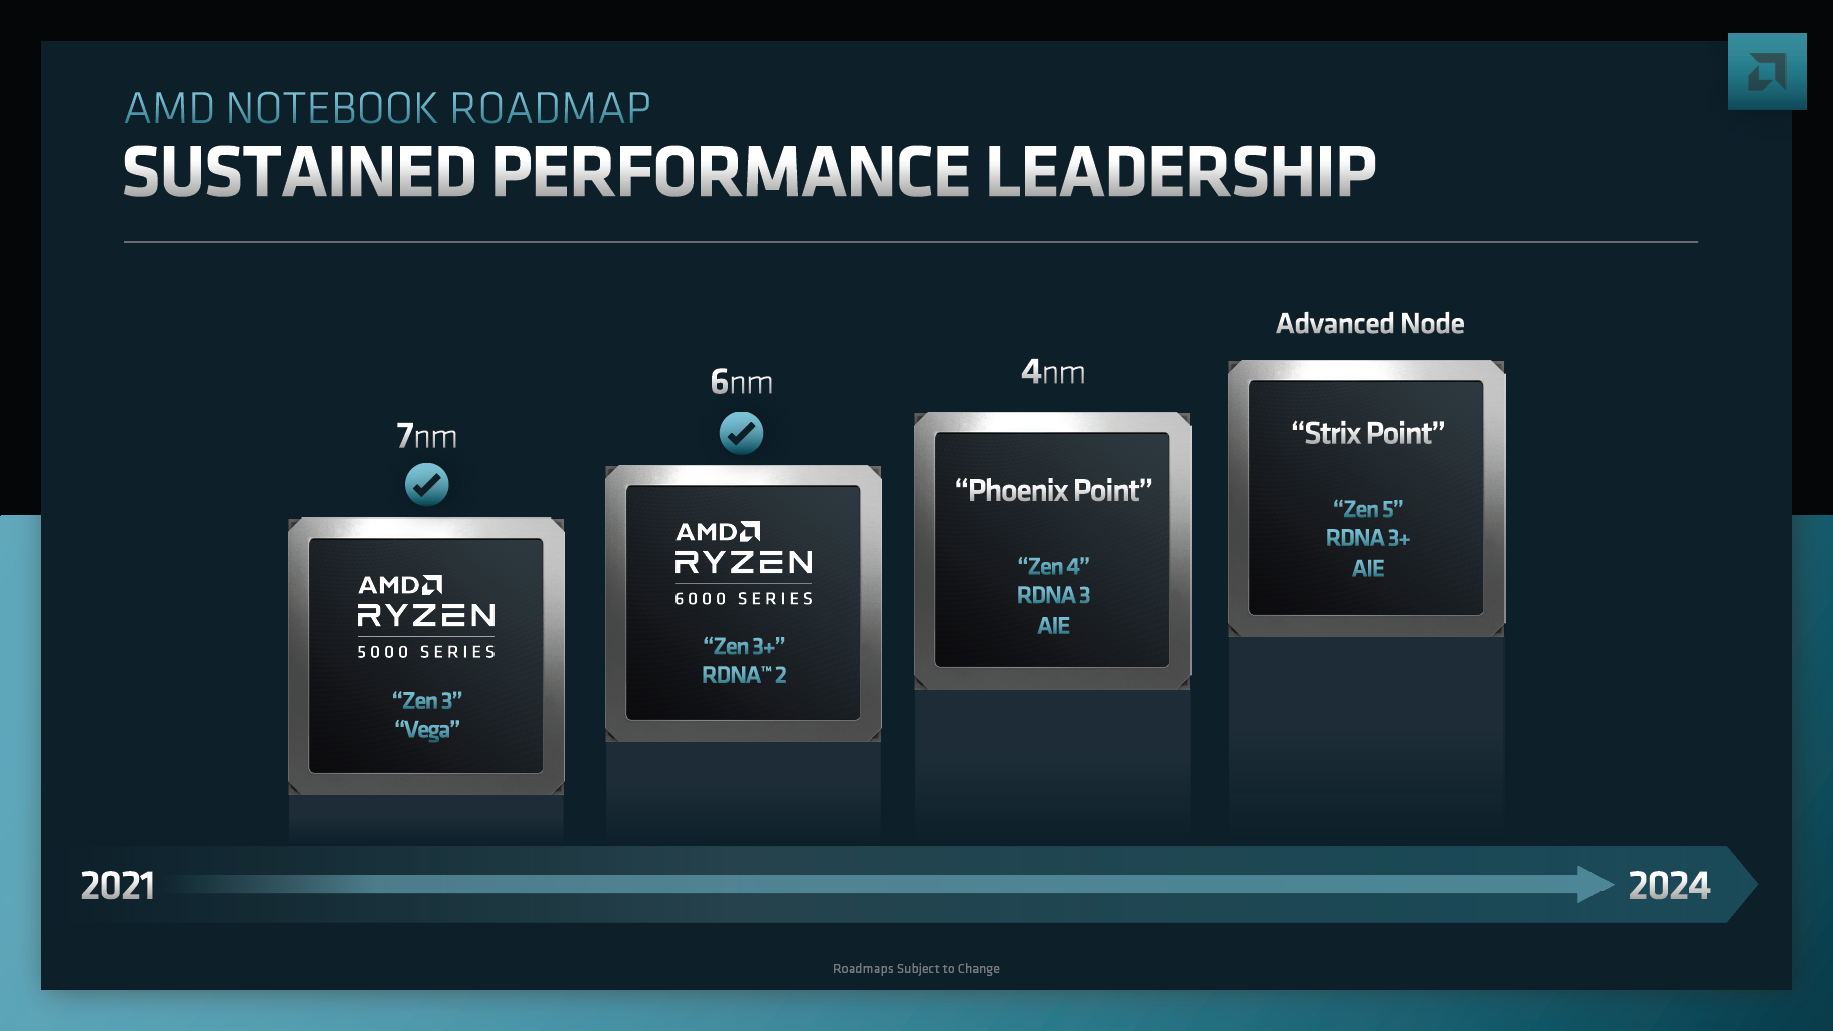 Strix Point": AMD folgt angeblich Intels Idee von Hybrid-Prozessoren |  heise online